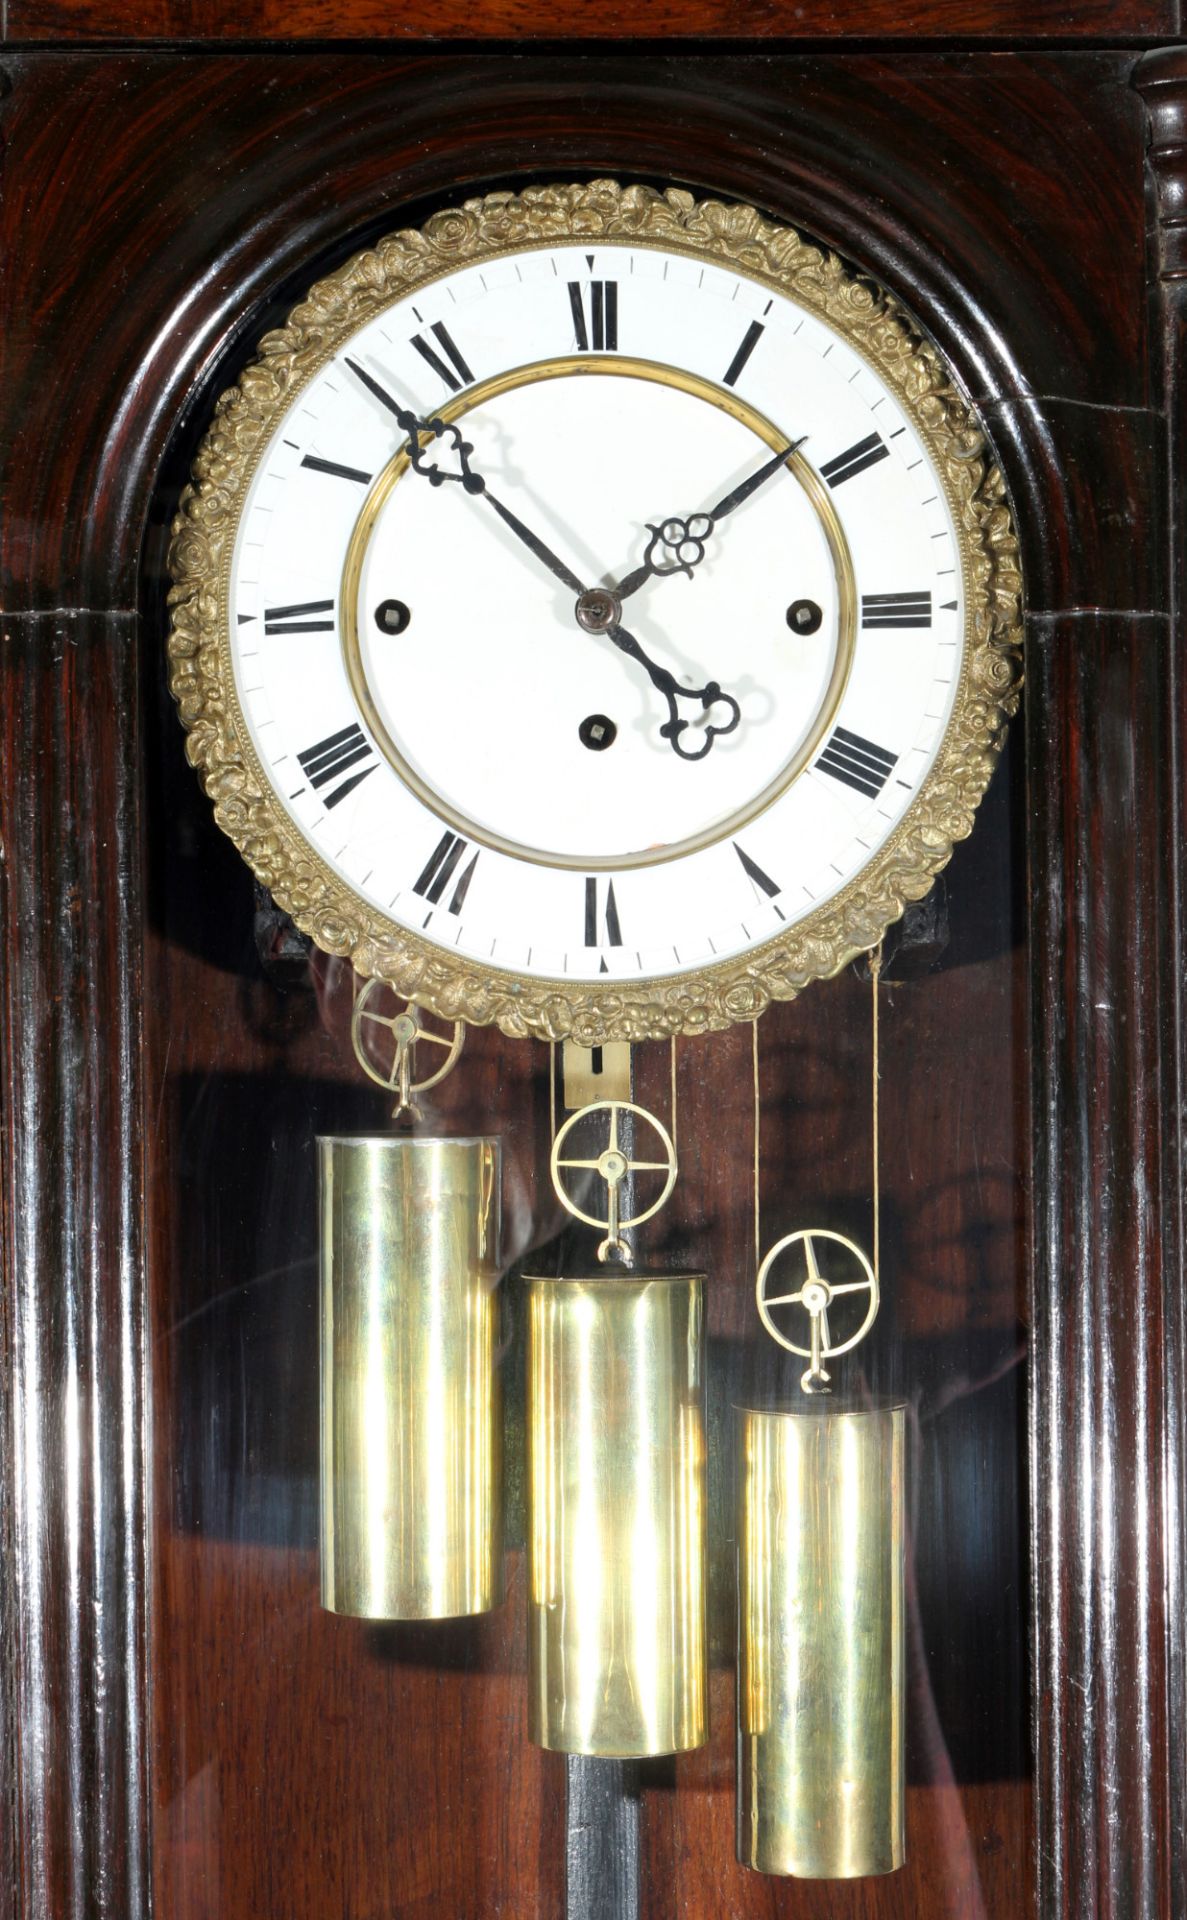 Wiener Regulator 3-Gewichter um 1900, vienna wall clock, - Bild 2 aus 6